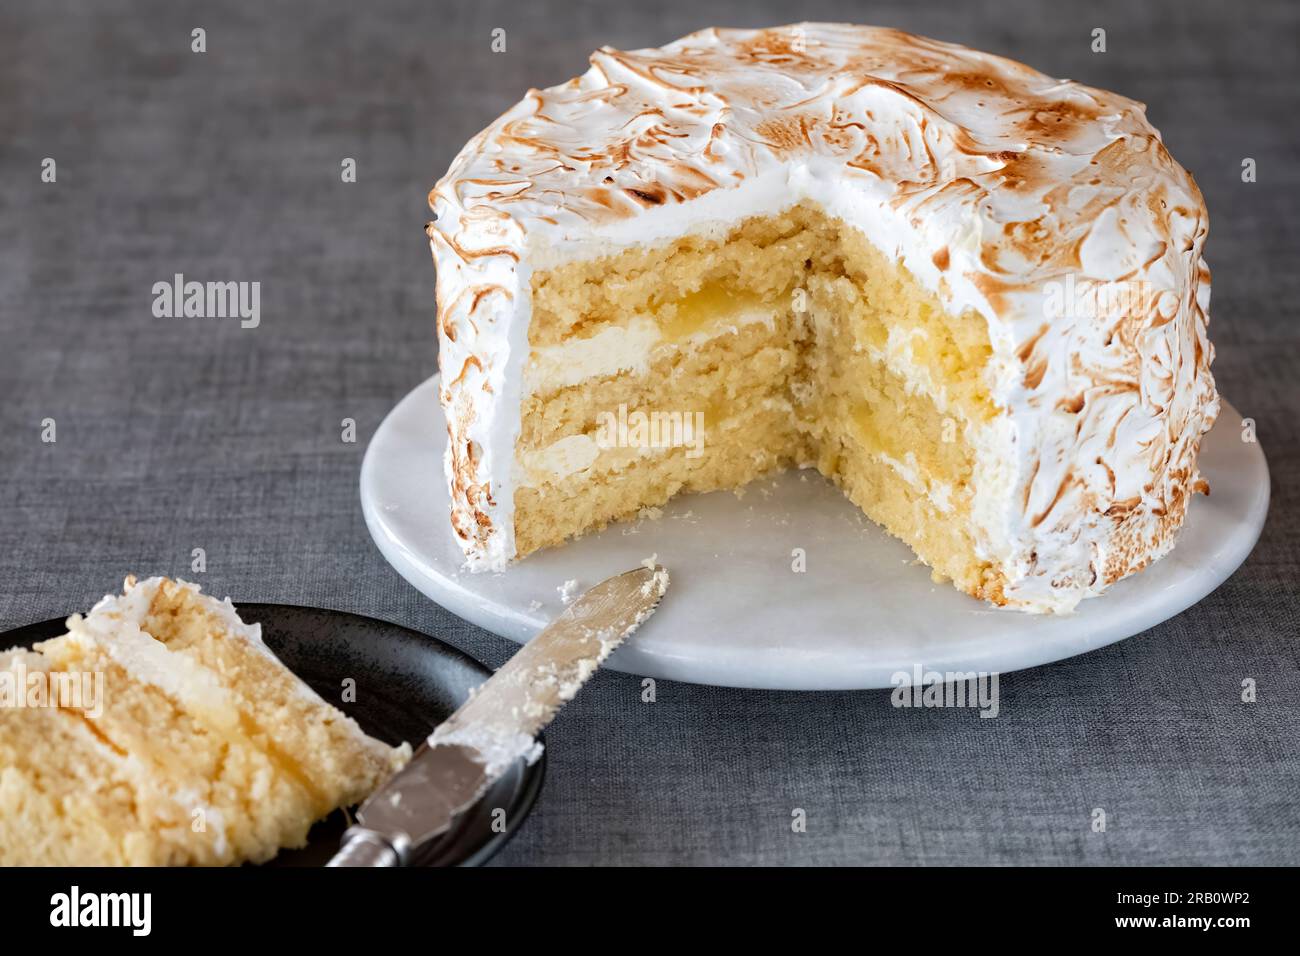 Un gâteau de meringue au citron fait maison servi à une table plaquée. Le gâteau a une garniture au citron caillé et un glaçage à la crème au beurre et un glaçage à la meringue brûlée Banque D'Images